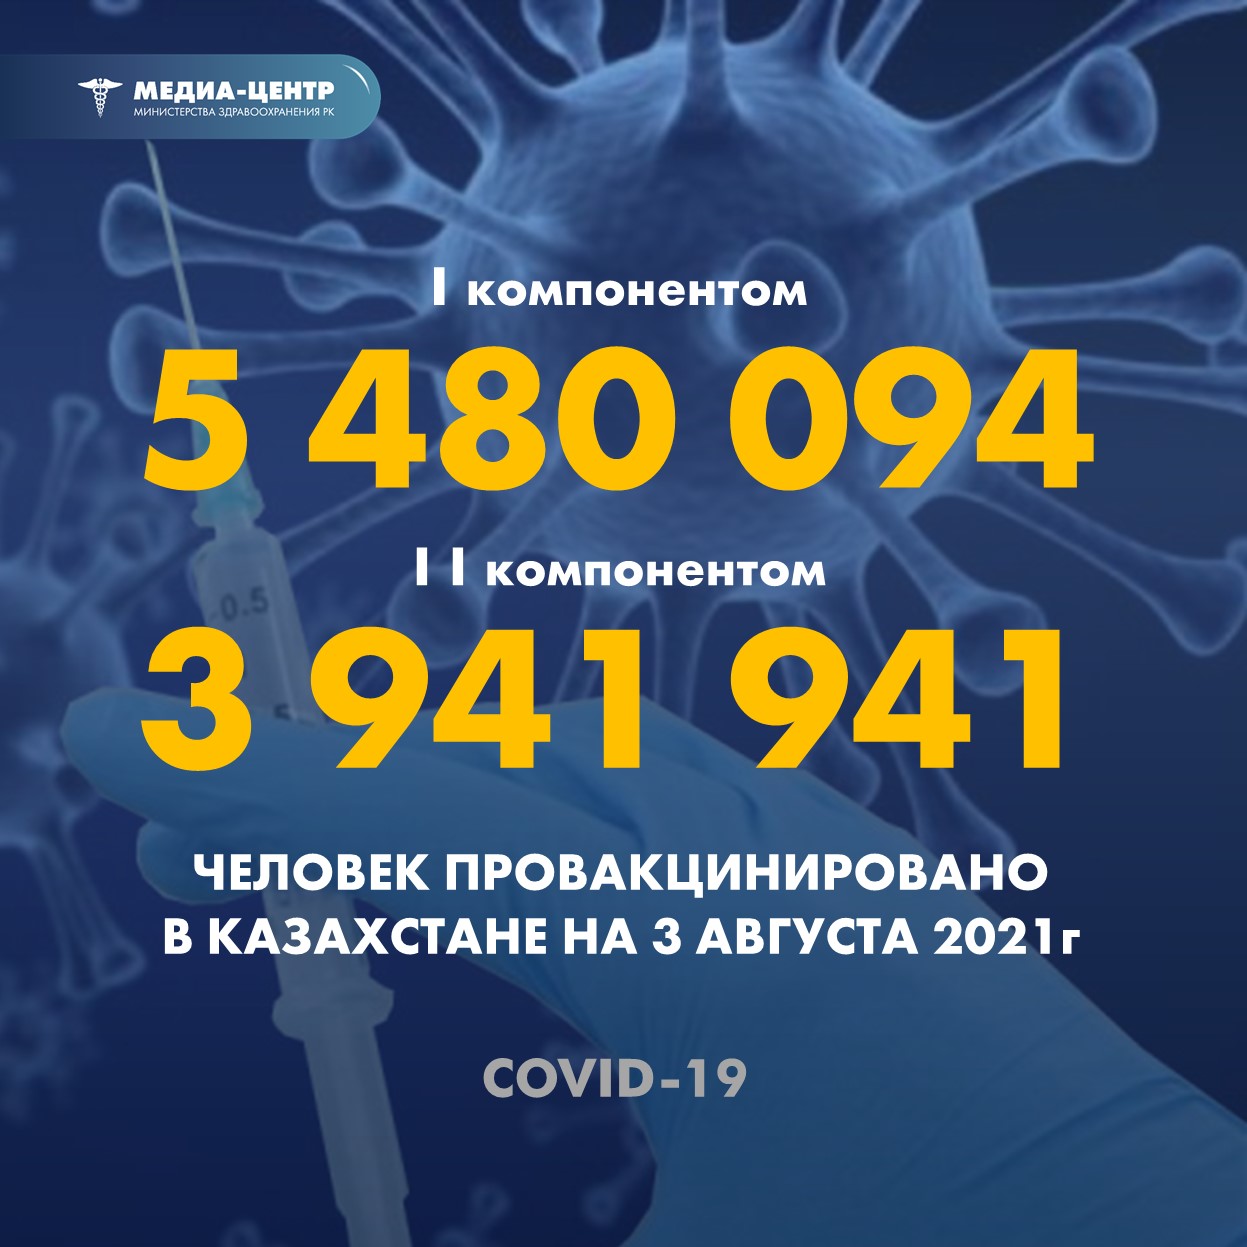 I компонентом 5 480 094 человек провакцинировано в Казахстане на 3 августа 2021 г, II компонентом 3 941 941 человек